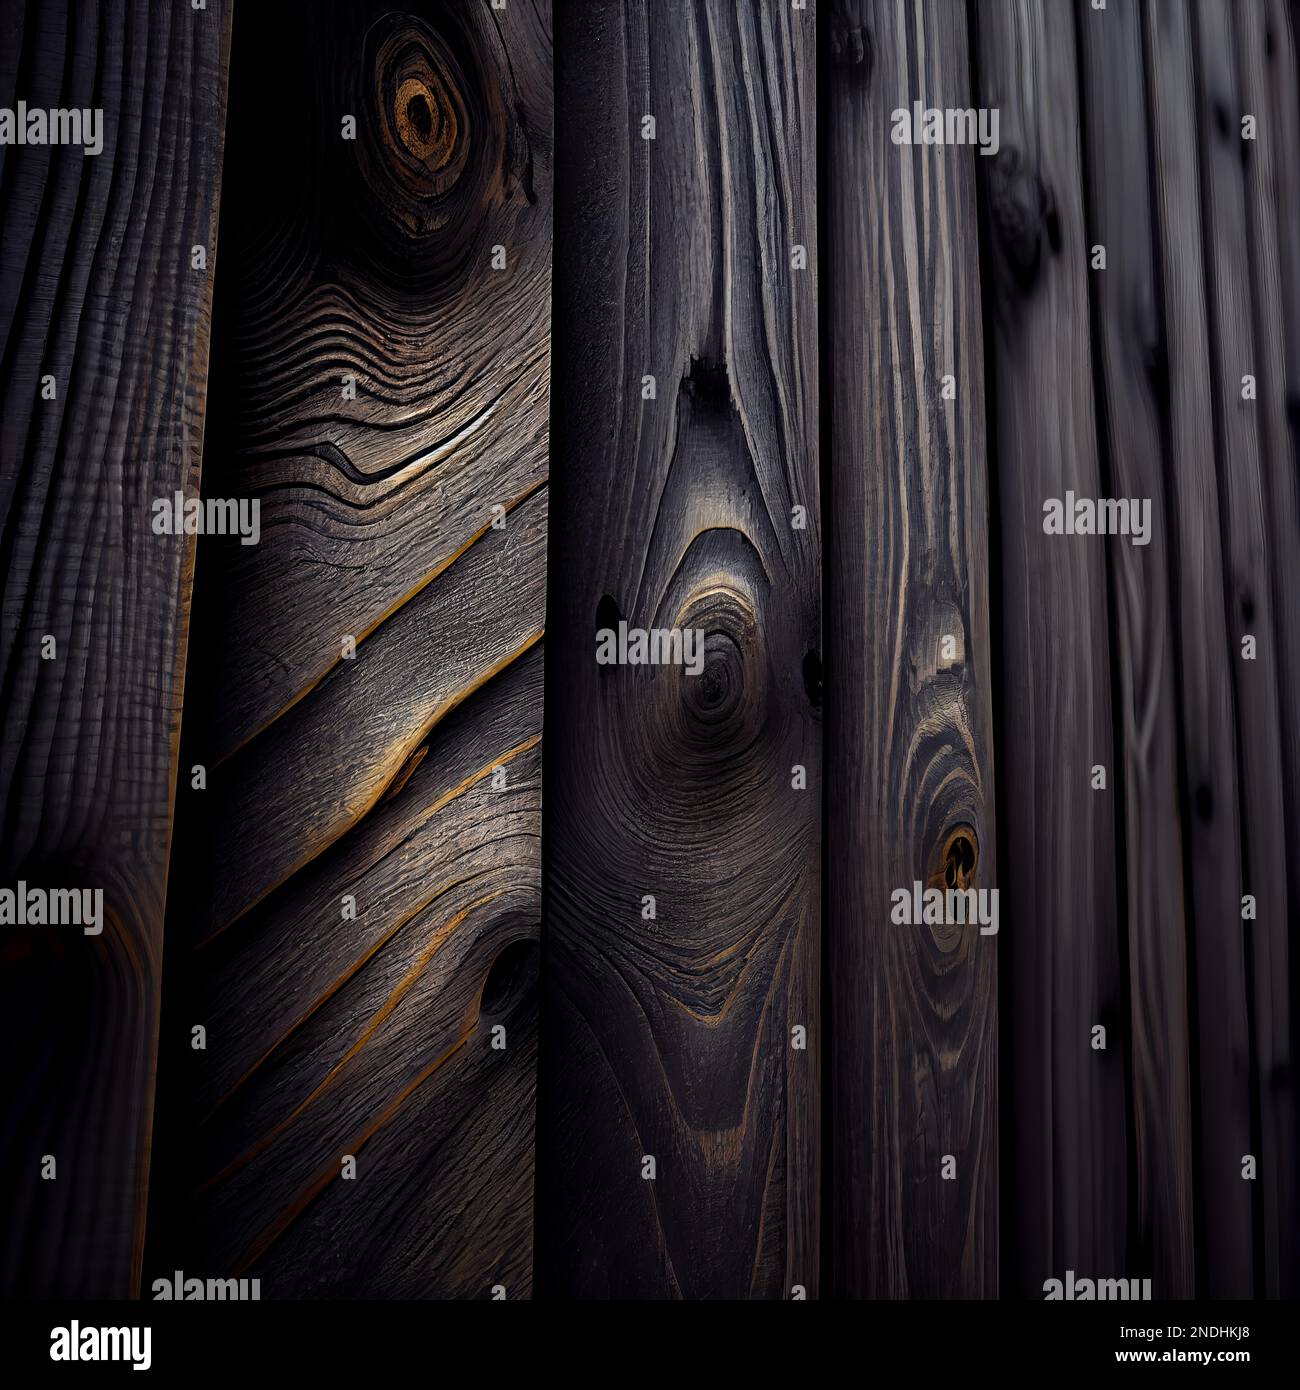 Abstrakter Hintergrund der Holzoberfläche Shou Sugi Ban. Dekorative Holzpaneele Nahaufnahme, detaillierte Holzstruktur. Natürliches, altmodisches Holzmaterial abstraktes Muster. Stockfoto